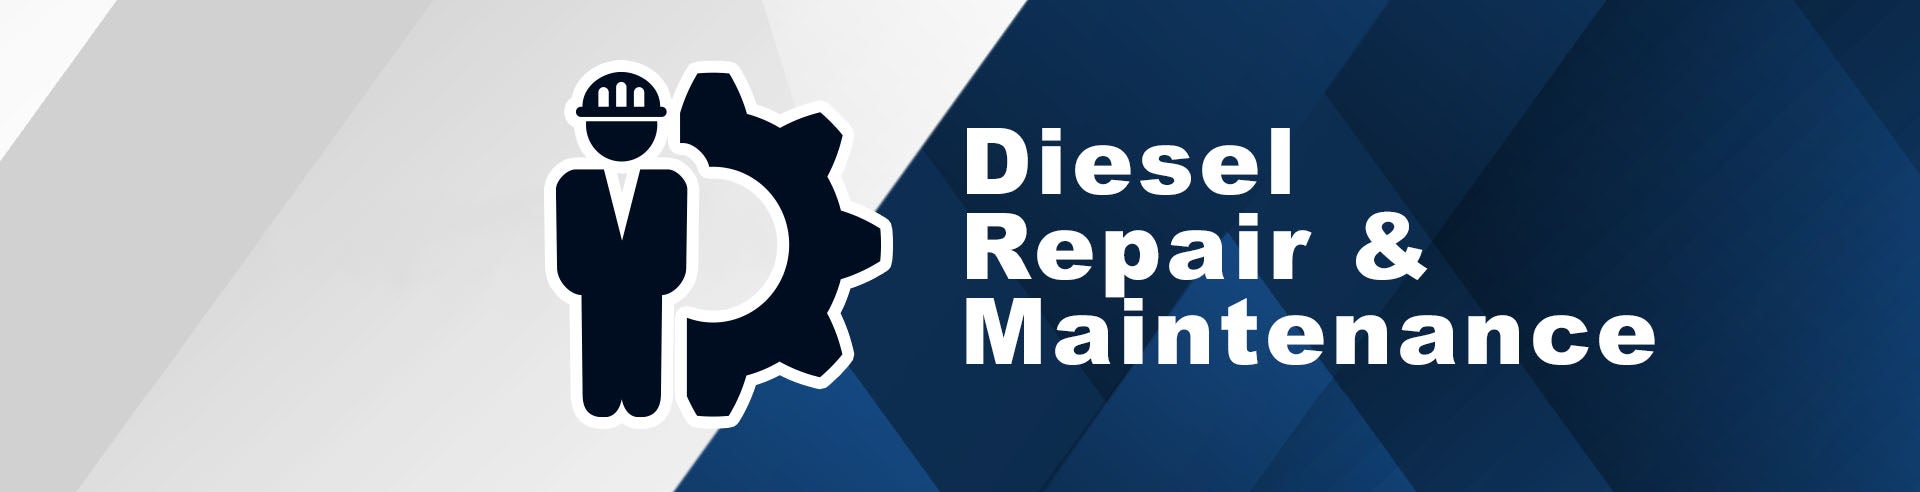 Diesel Repair & Maintenance